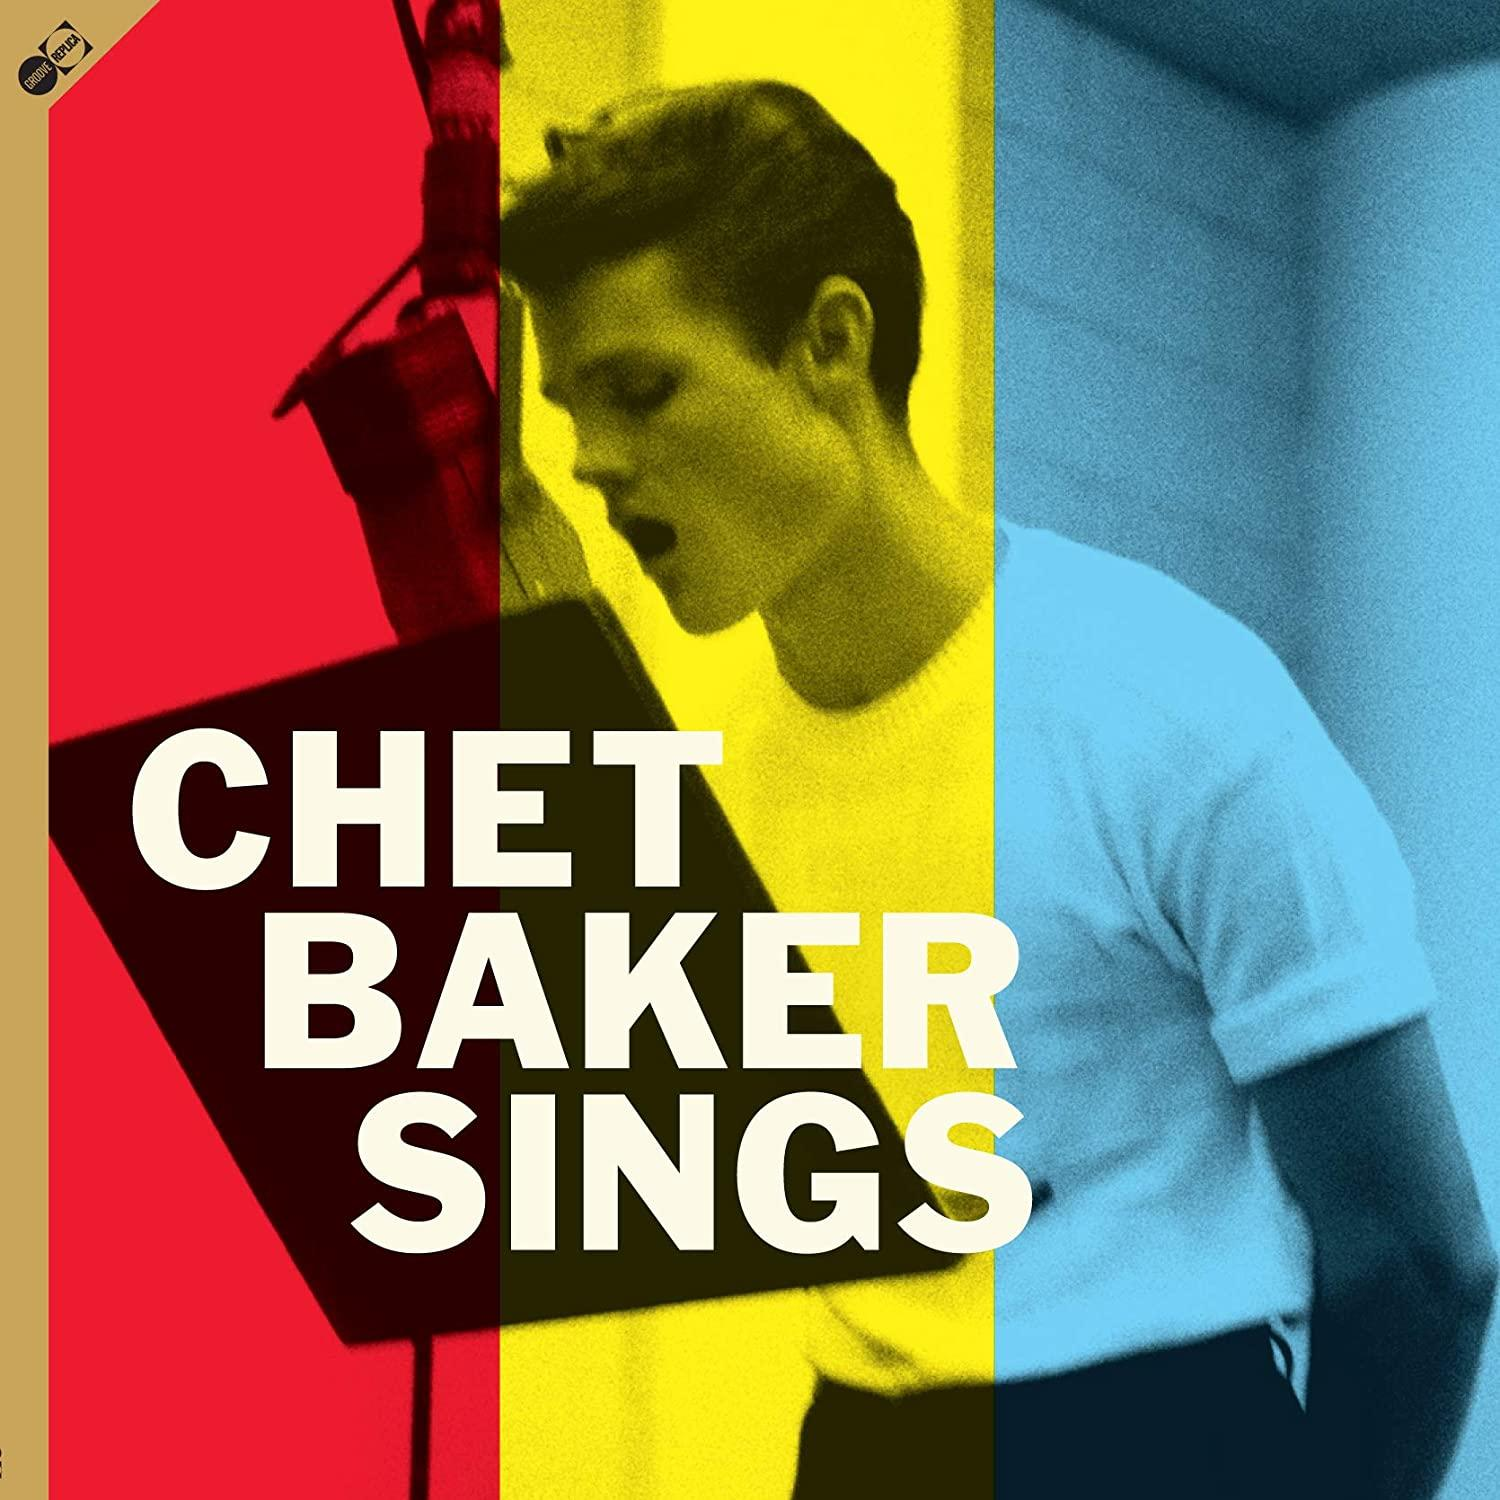 Chet Baker BONUS SINGS+10 - - TRACKS (180G+BONUS) Bonus-CD) + (LP